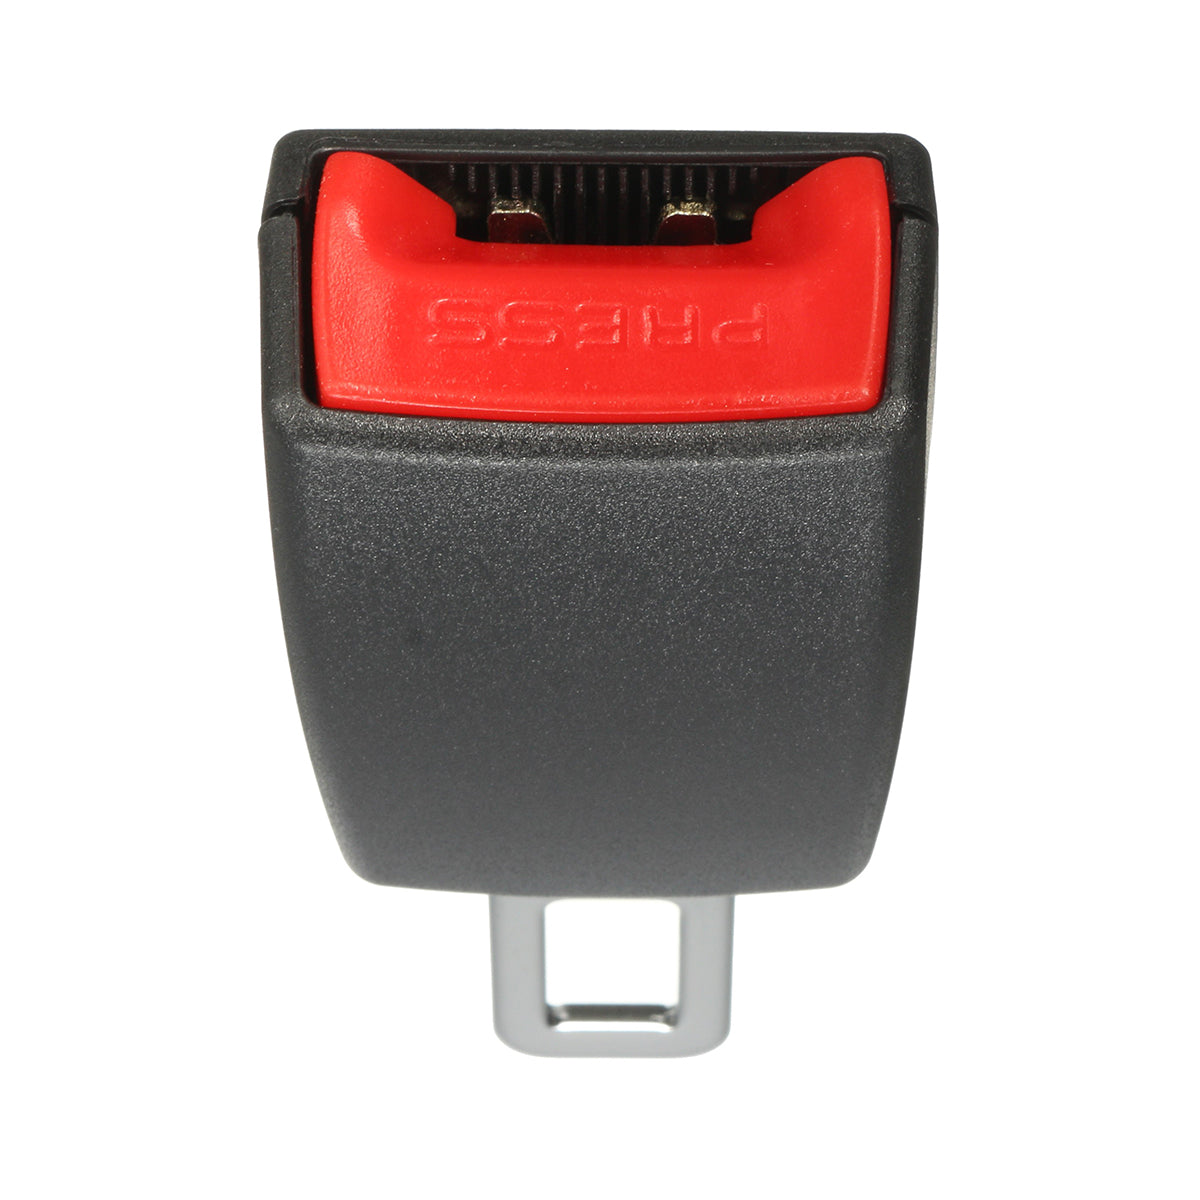 Orange Red Universal Car Seat Belt Plug Buckle Extender Safety Seatbelt Clip Extension Holder 22mm